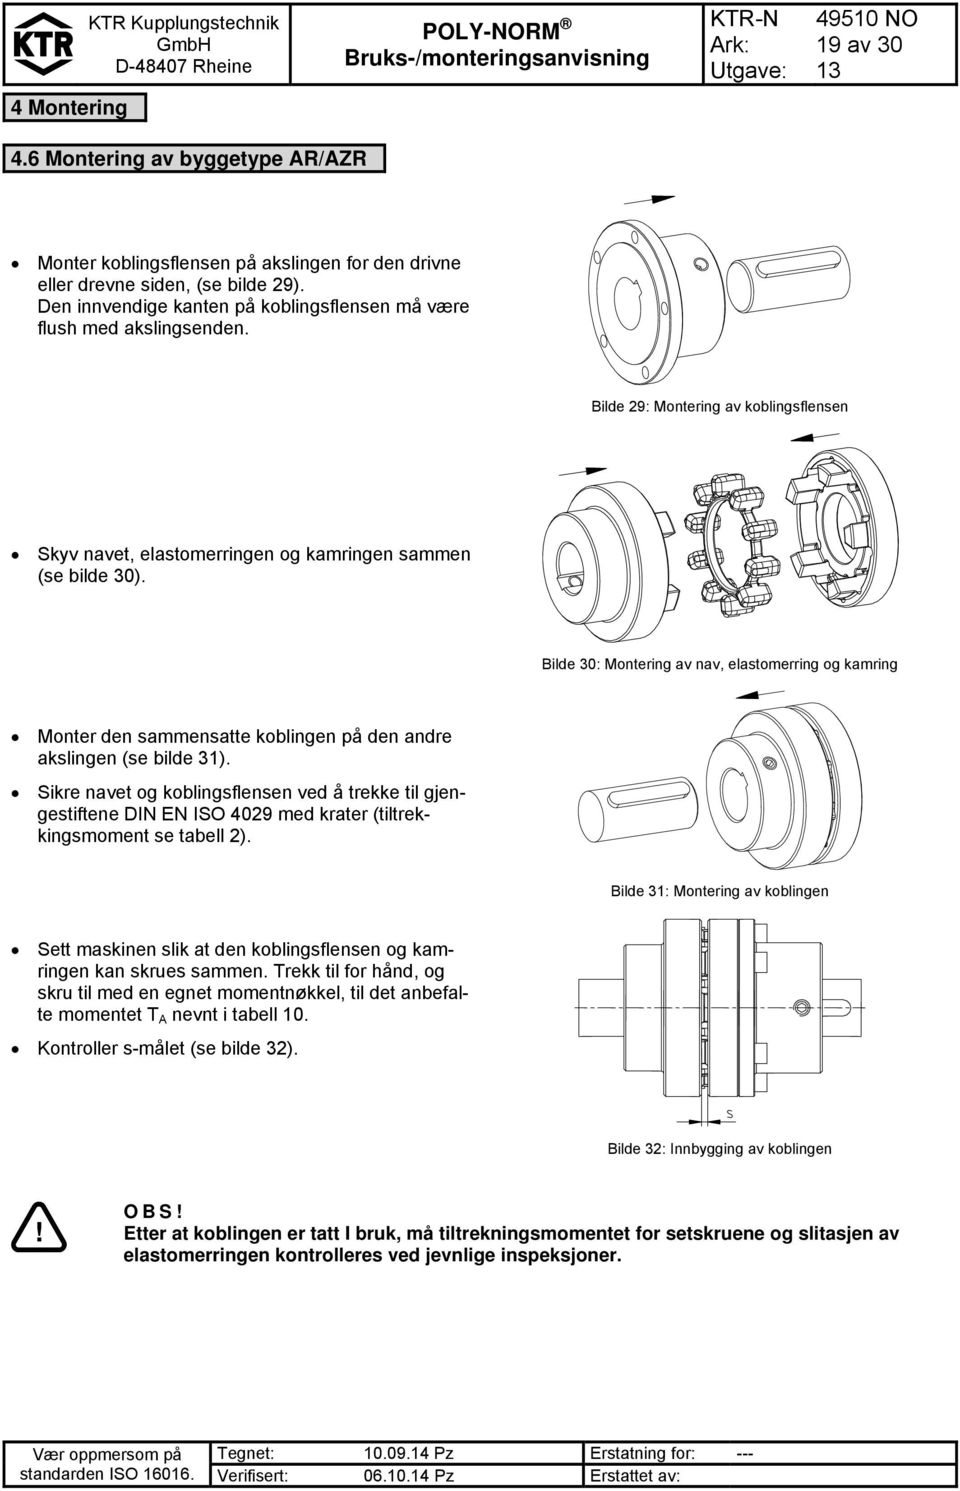 Bilde 30: Montering av nav, elastomerring og kamring Monter den sammensatte koblingen på den andre akslingen (se bilde 31).